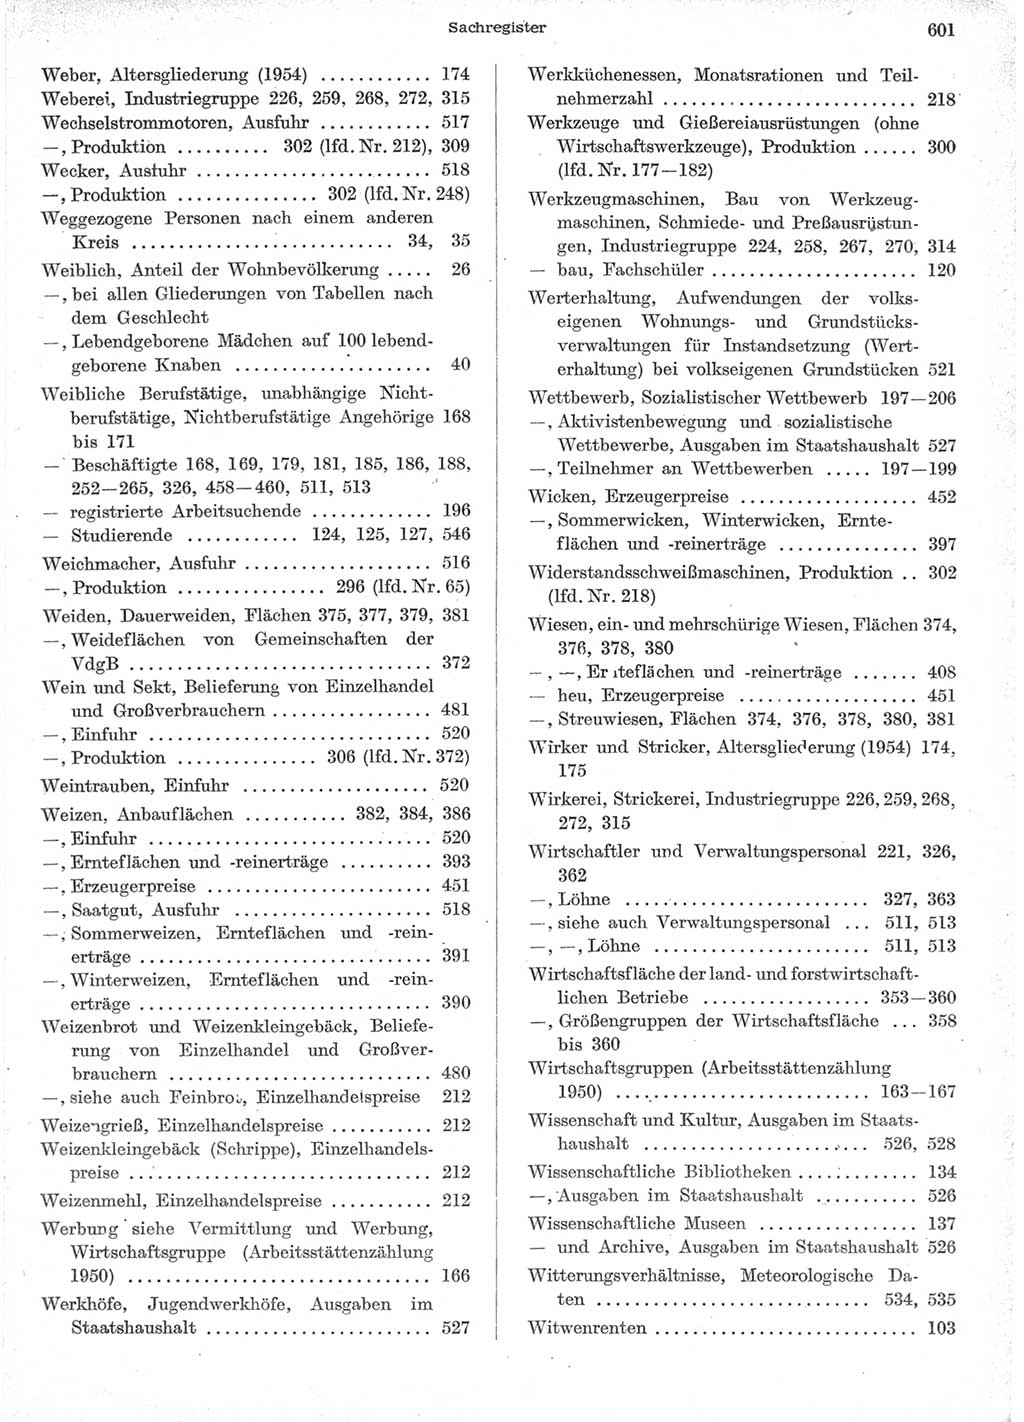 Statistisches Jahrbuch der Deutschen Demokratischen Republik (DDR) 1957, Seite 601 (Stat. Jb. DDR 1957, S. 601)